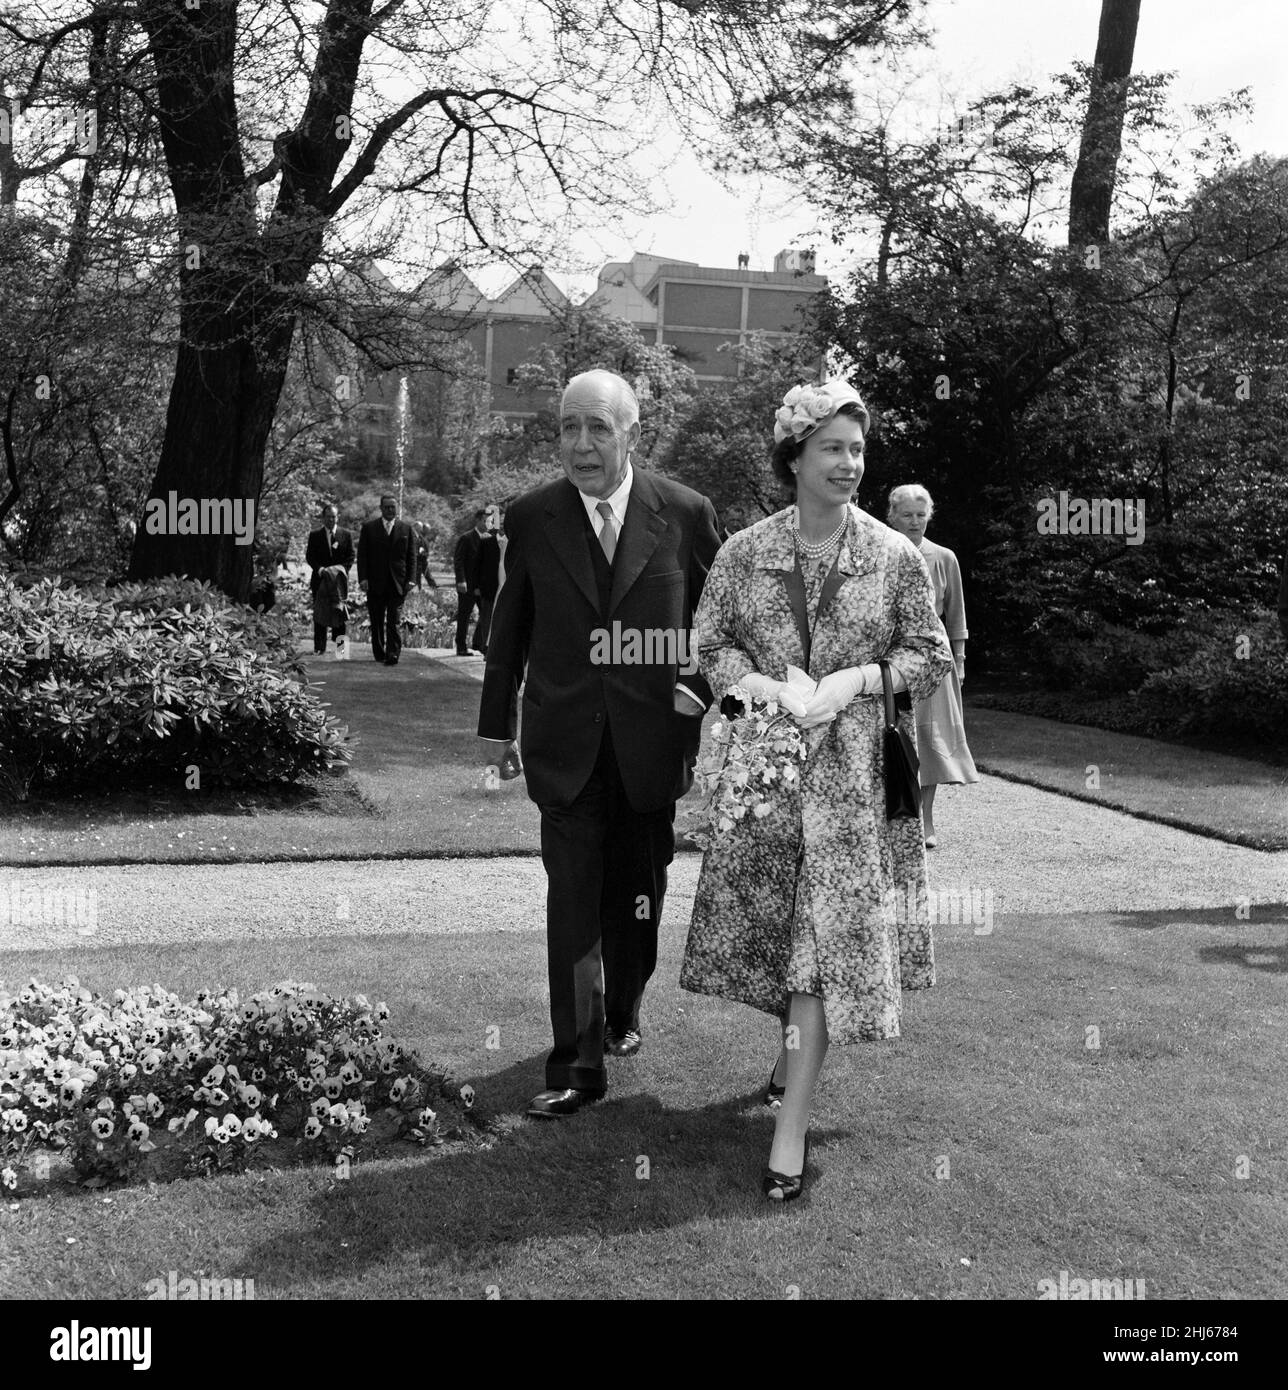 Königin Elizabeth II. Und Prinz Philip, Herzog von Edinburgh, besuchen Dänemark. Die Königin im fröhlich gemusterten Mantel und passenden Kleid geht mit dem bedeutenden dänischen Nuklearphysiker Professor Niels Bohr in seiner Residenz in den Carlsberg Breweries spazieren. 22nd Mai 1957. Stockfoto